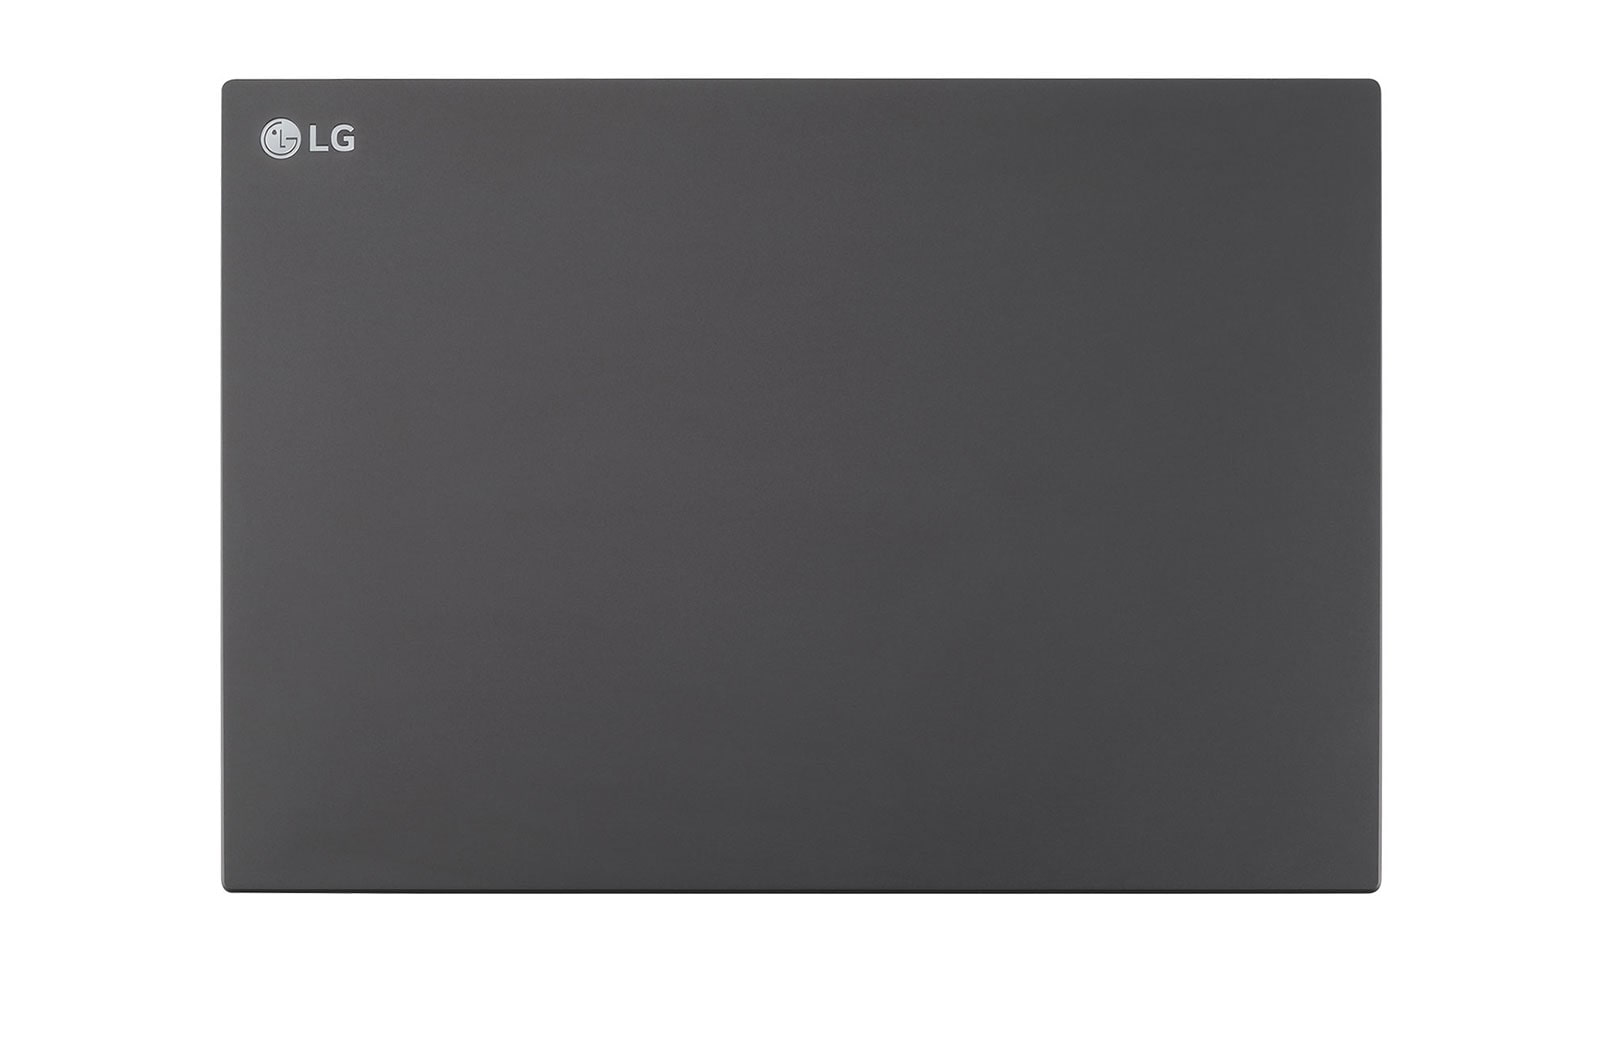 LG UltraPC 14U70Q - Ryzen 5 5625U - 16 GB RAM - 1000 GB SSD